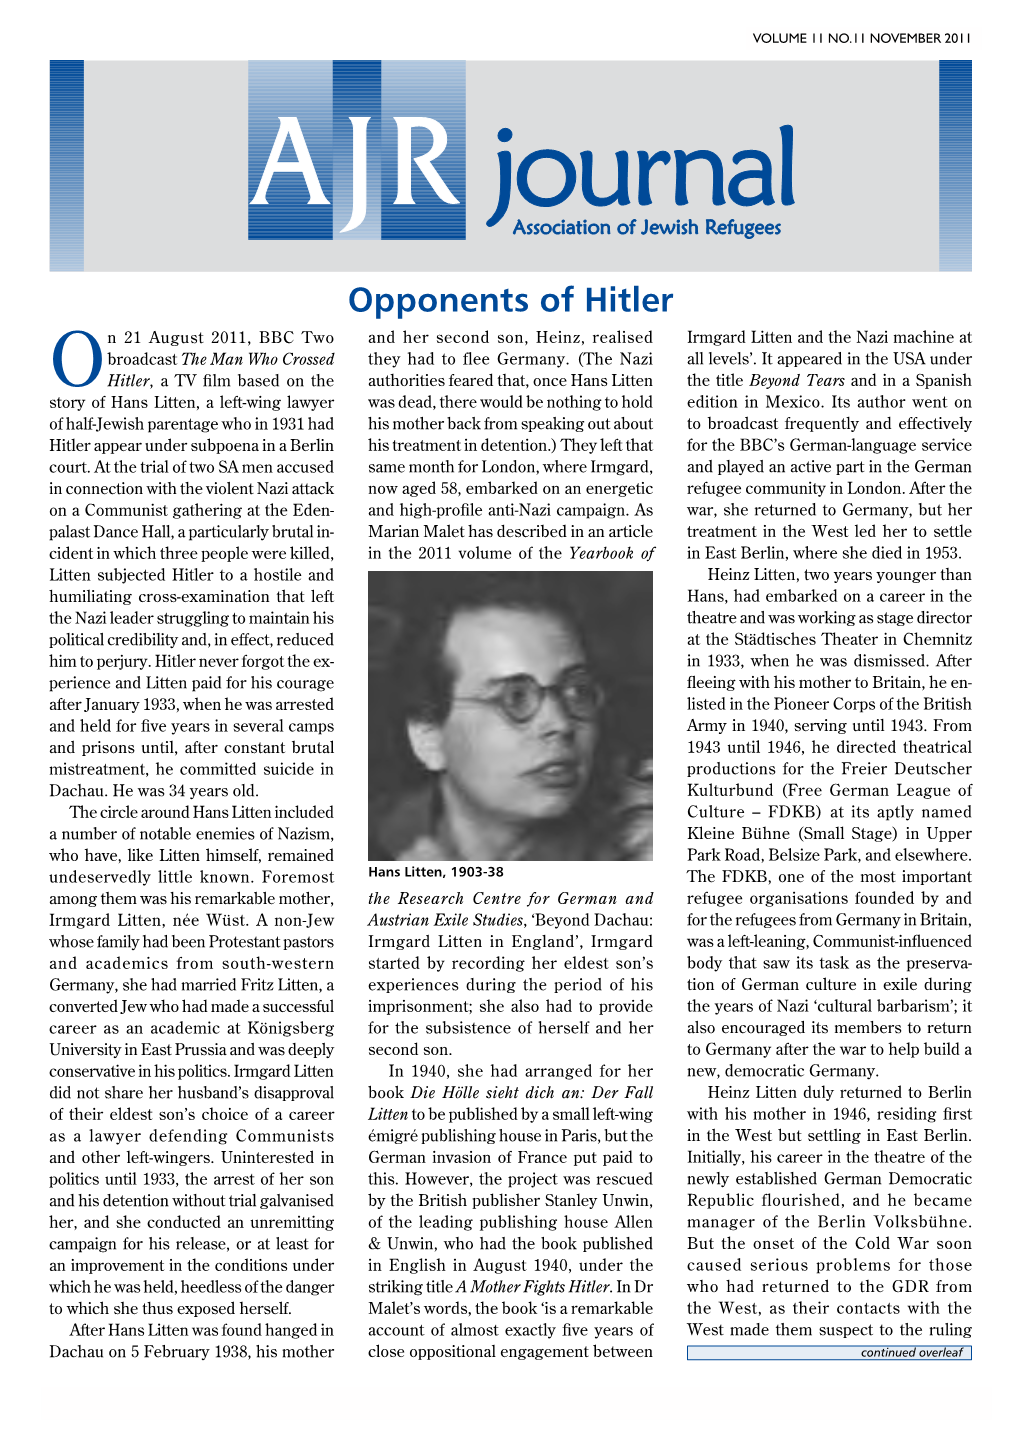 Opponents of Hitler